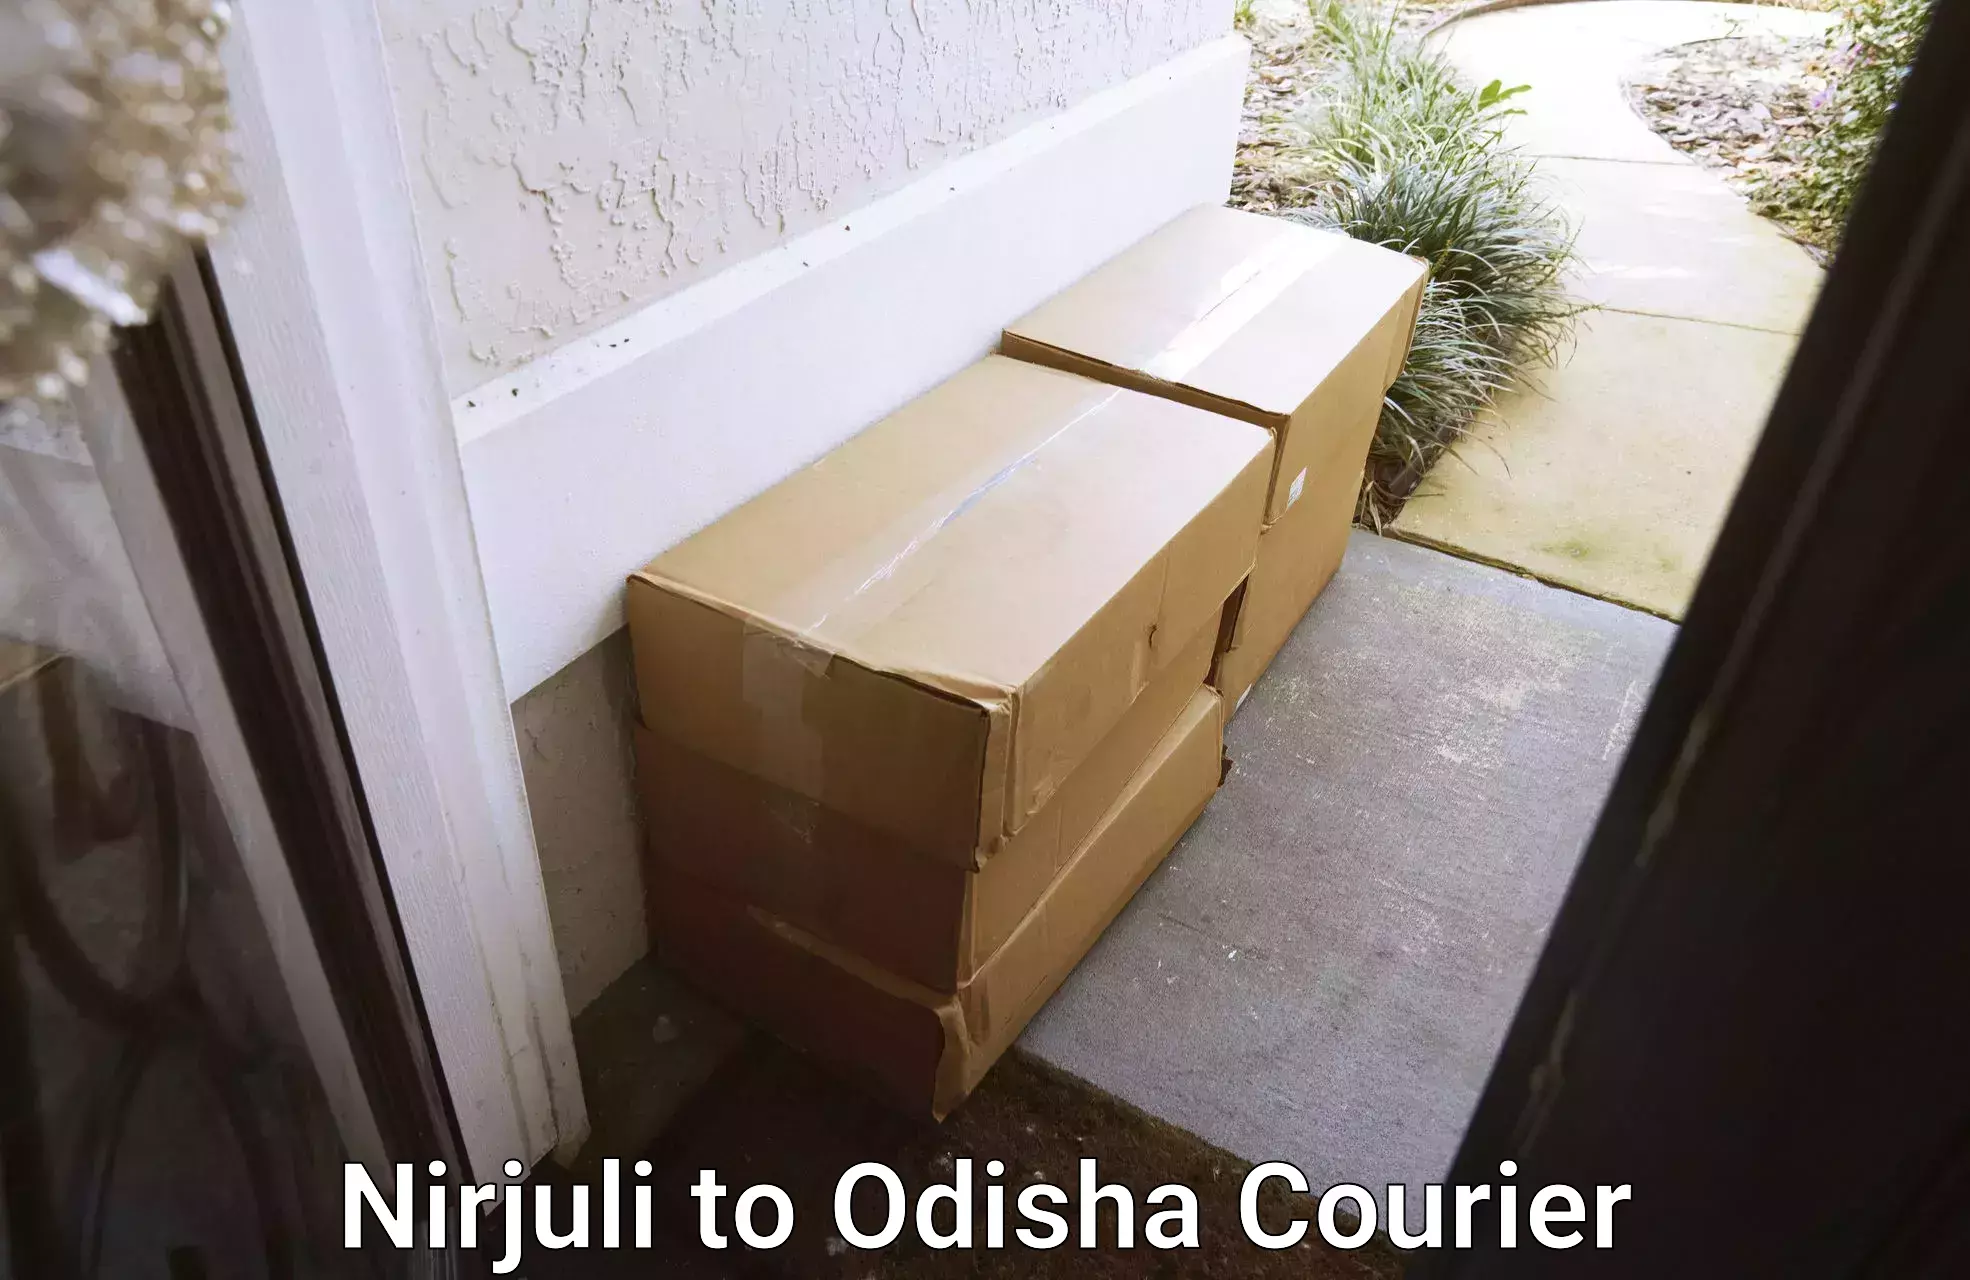 Efficient cargo handling Nirjuli to Jashipur